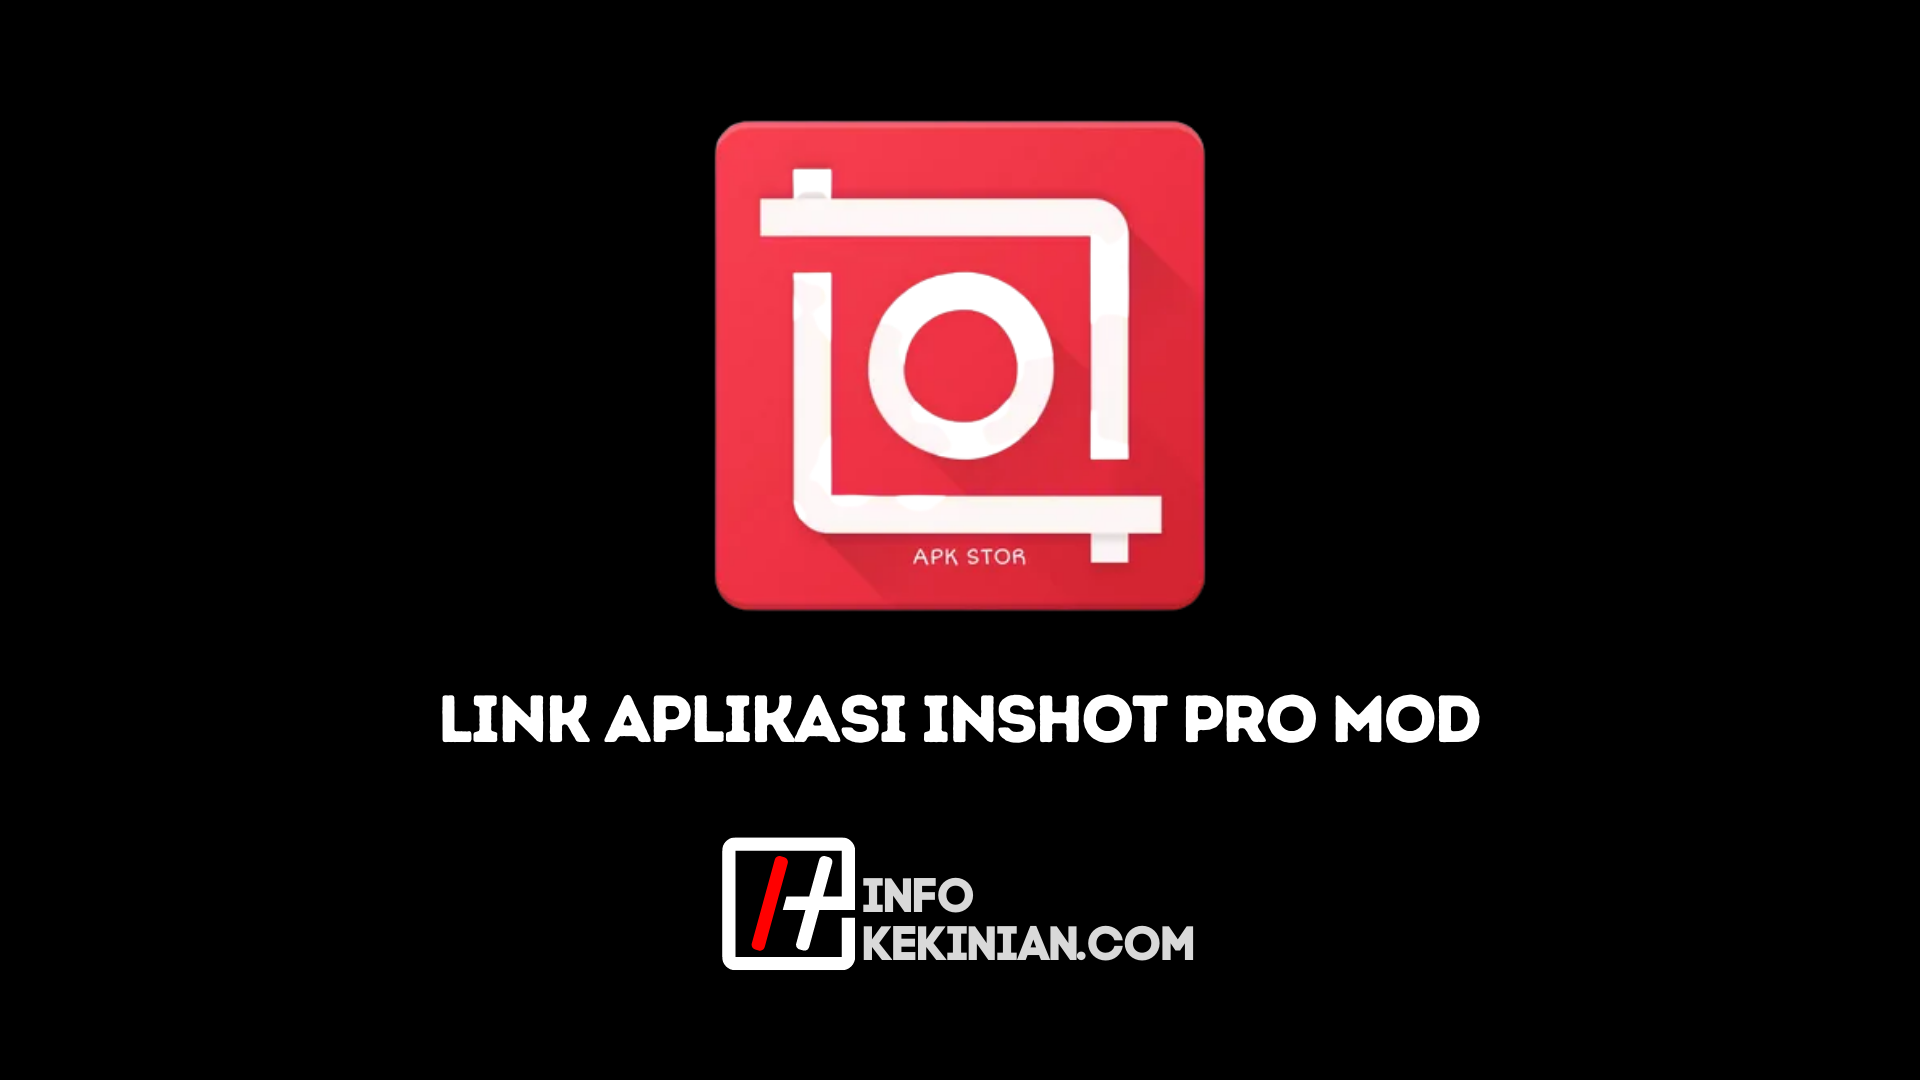 Co to jest Inshot Pro Mod APK_